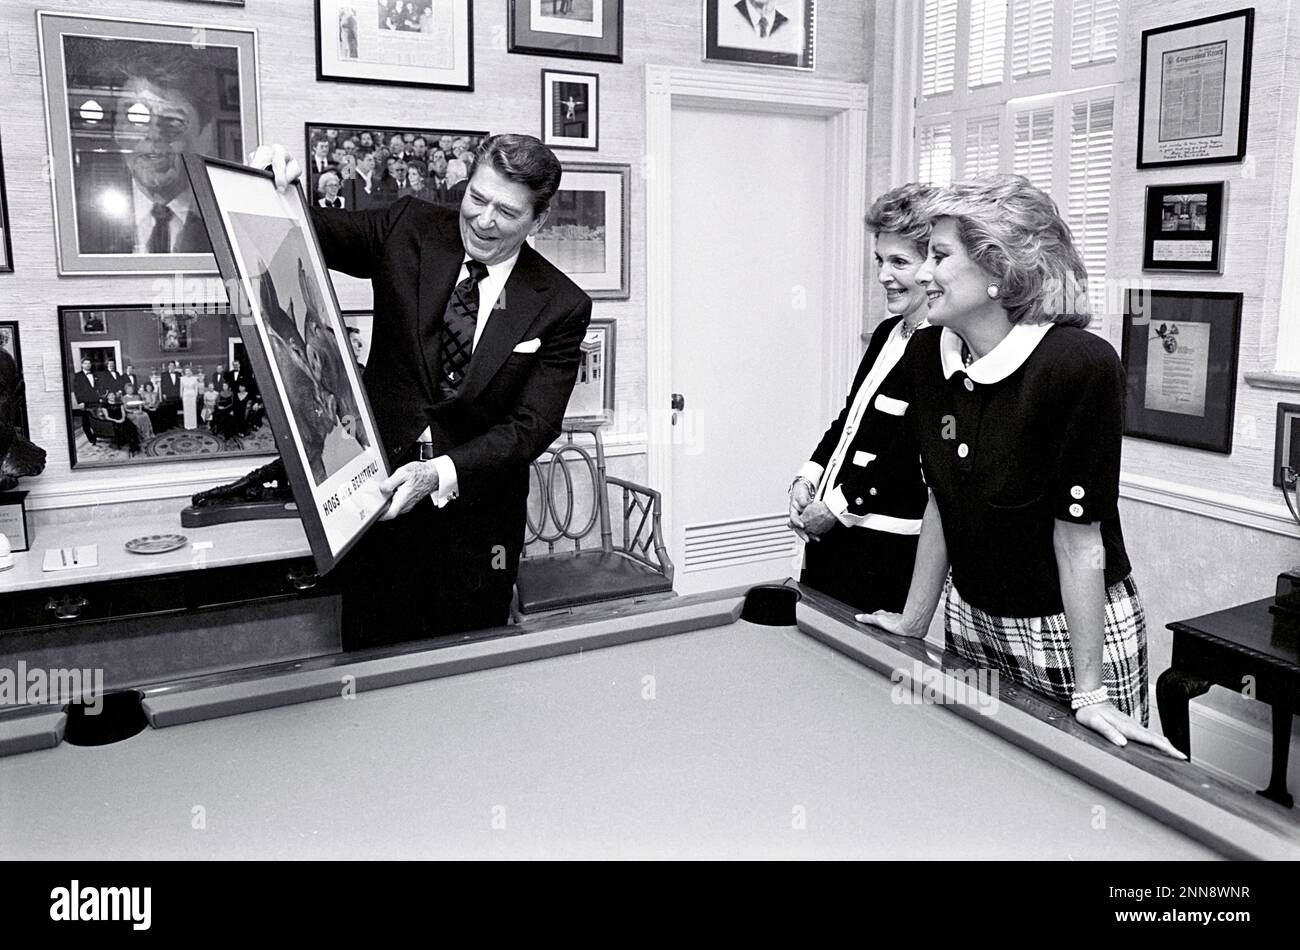 Le président Ronald Reagan et Nancy Reagan dans la salle billard de la résidence de la Maison Blanche lors d'une entrevue avec la journaliste de télévision Barbara Walters, Washington, DC, 2/25/1986. (Photo du Bureau de presse de la Maison Blanche Banque D'Images